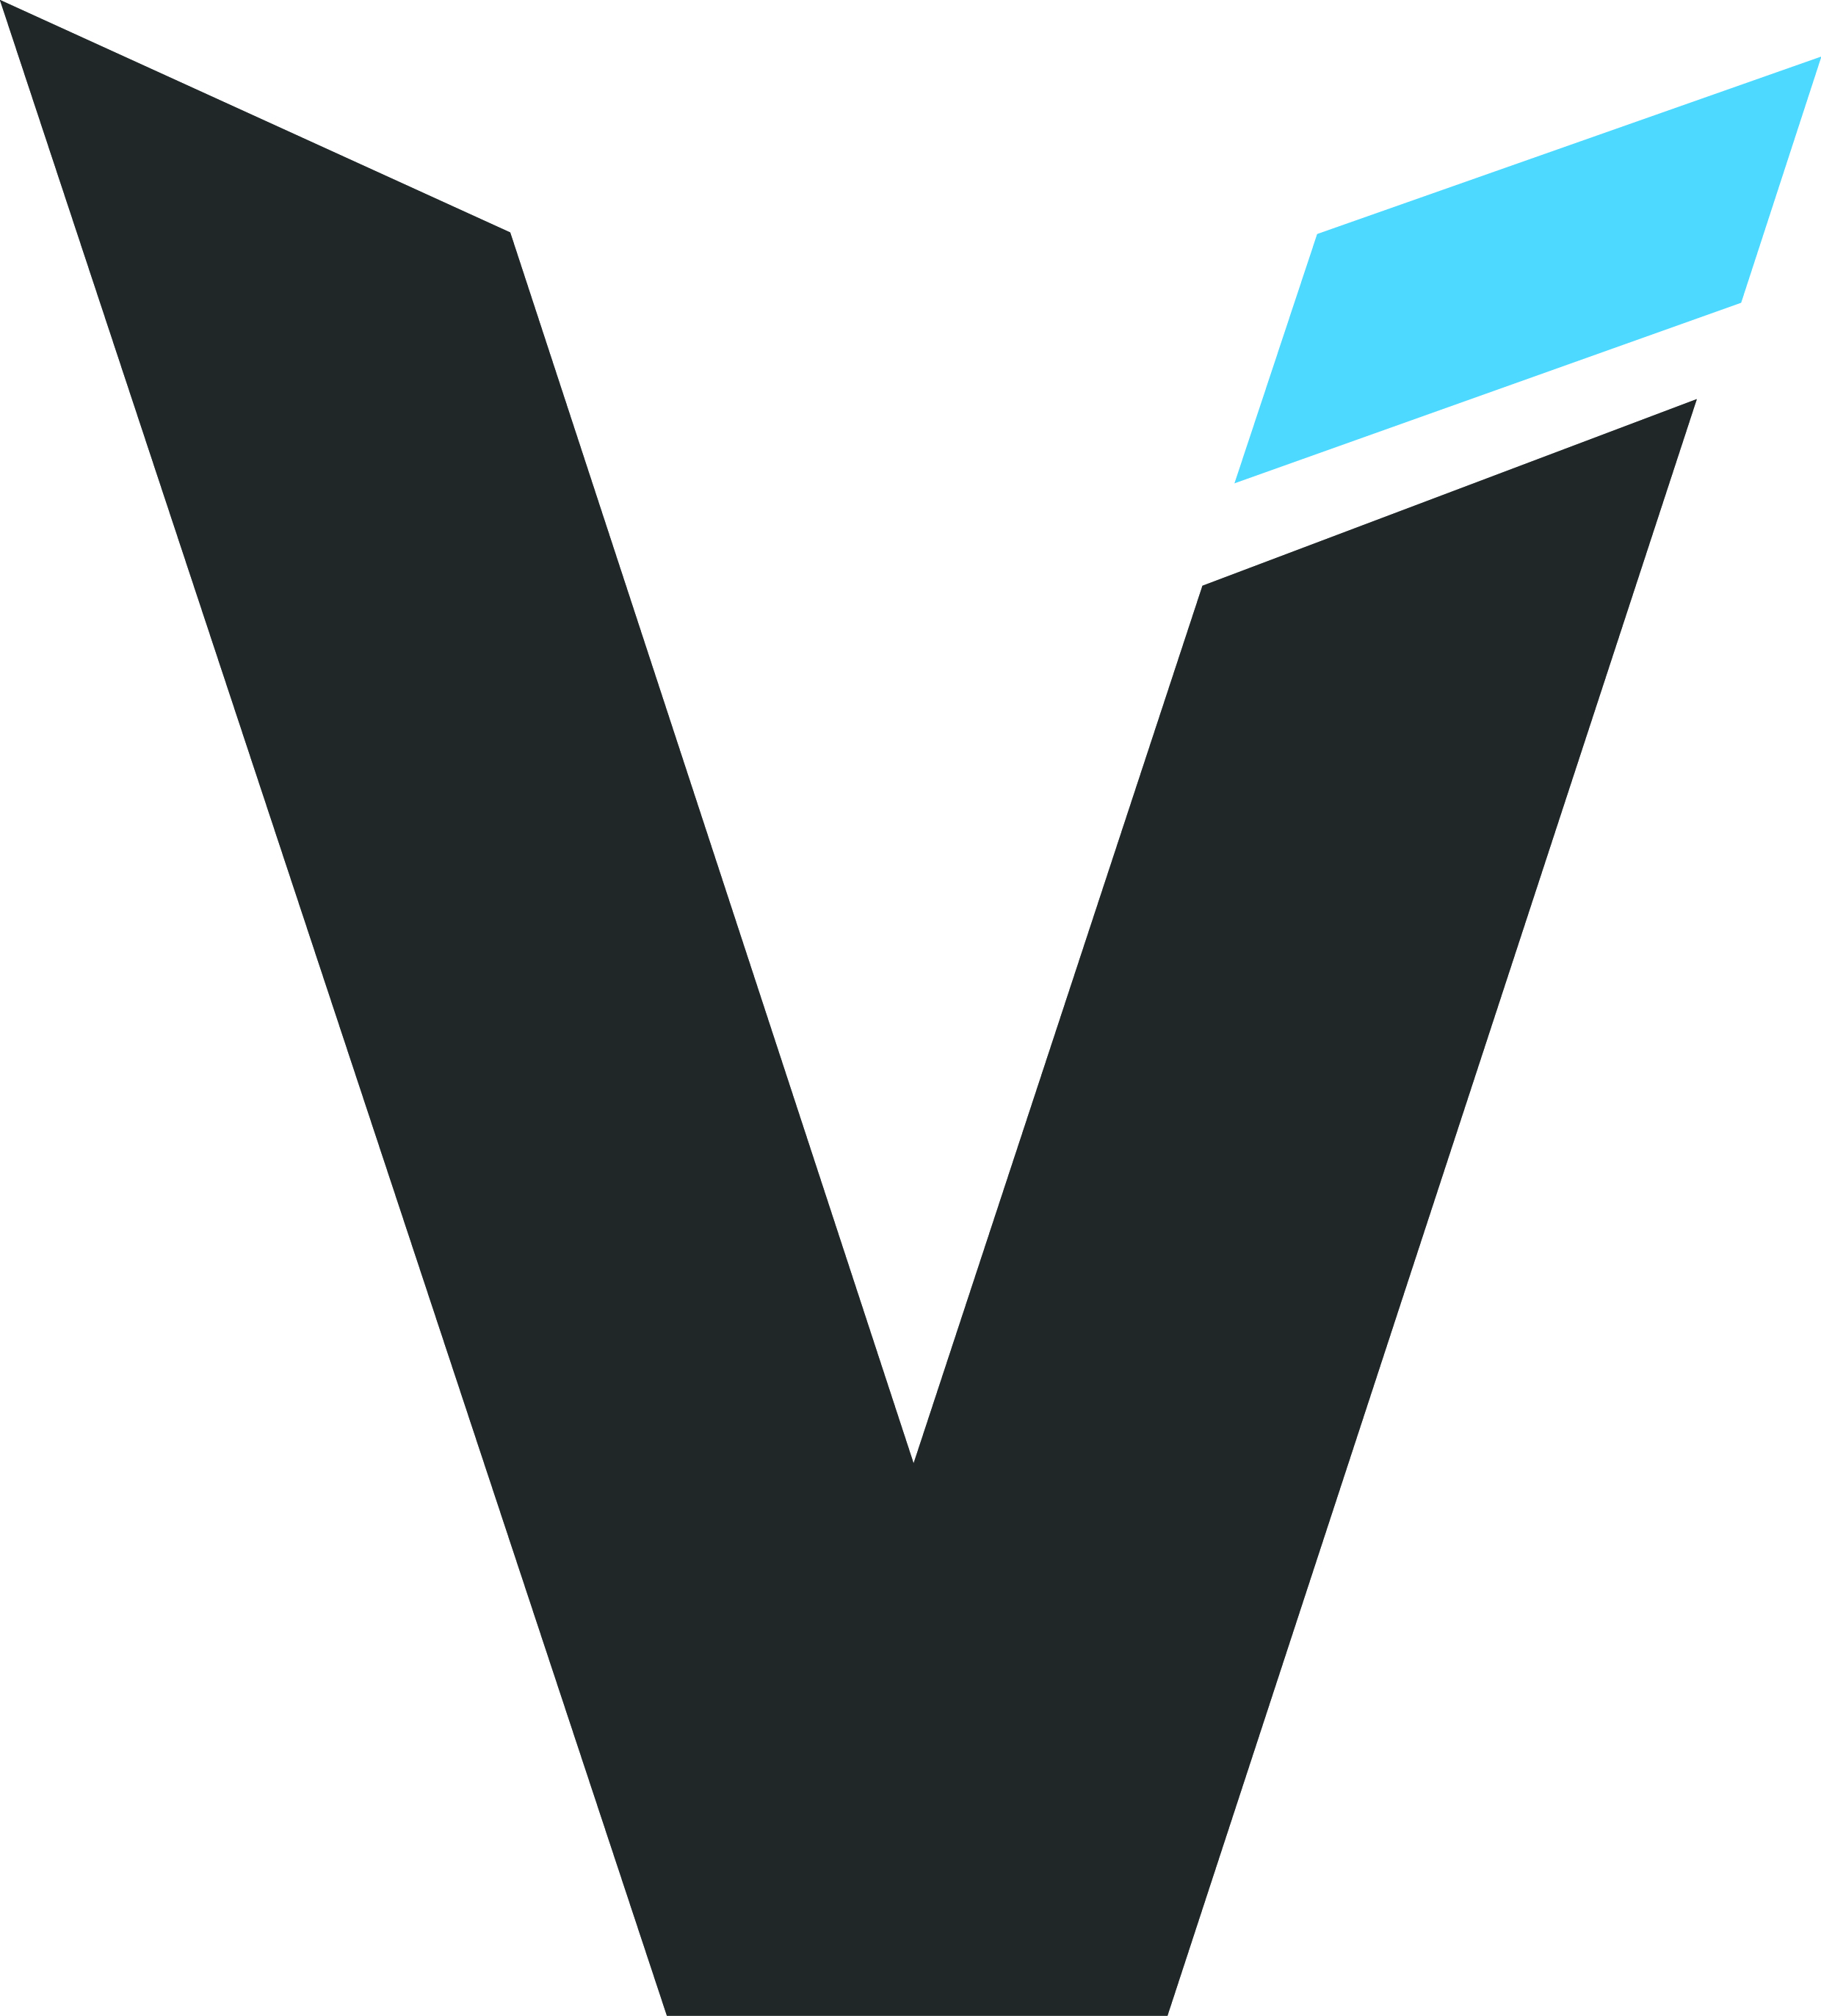 V c г с. Буква v. Логотип v. Стилизованная буква v. Логотип с буквой v.